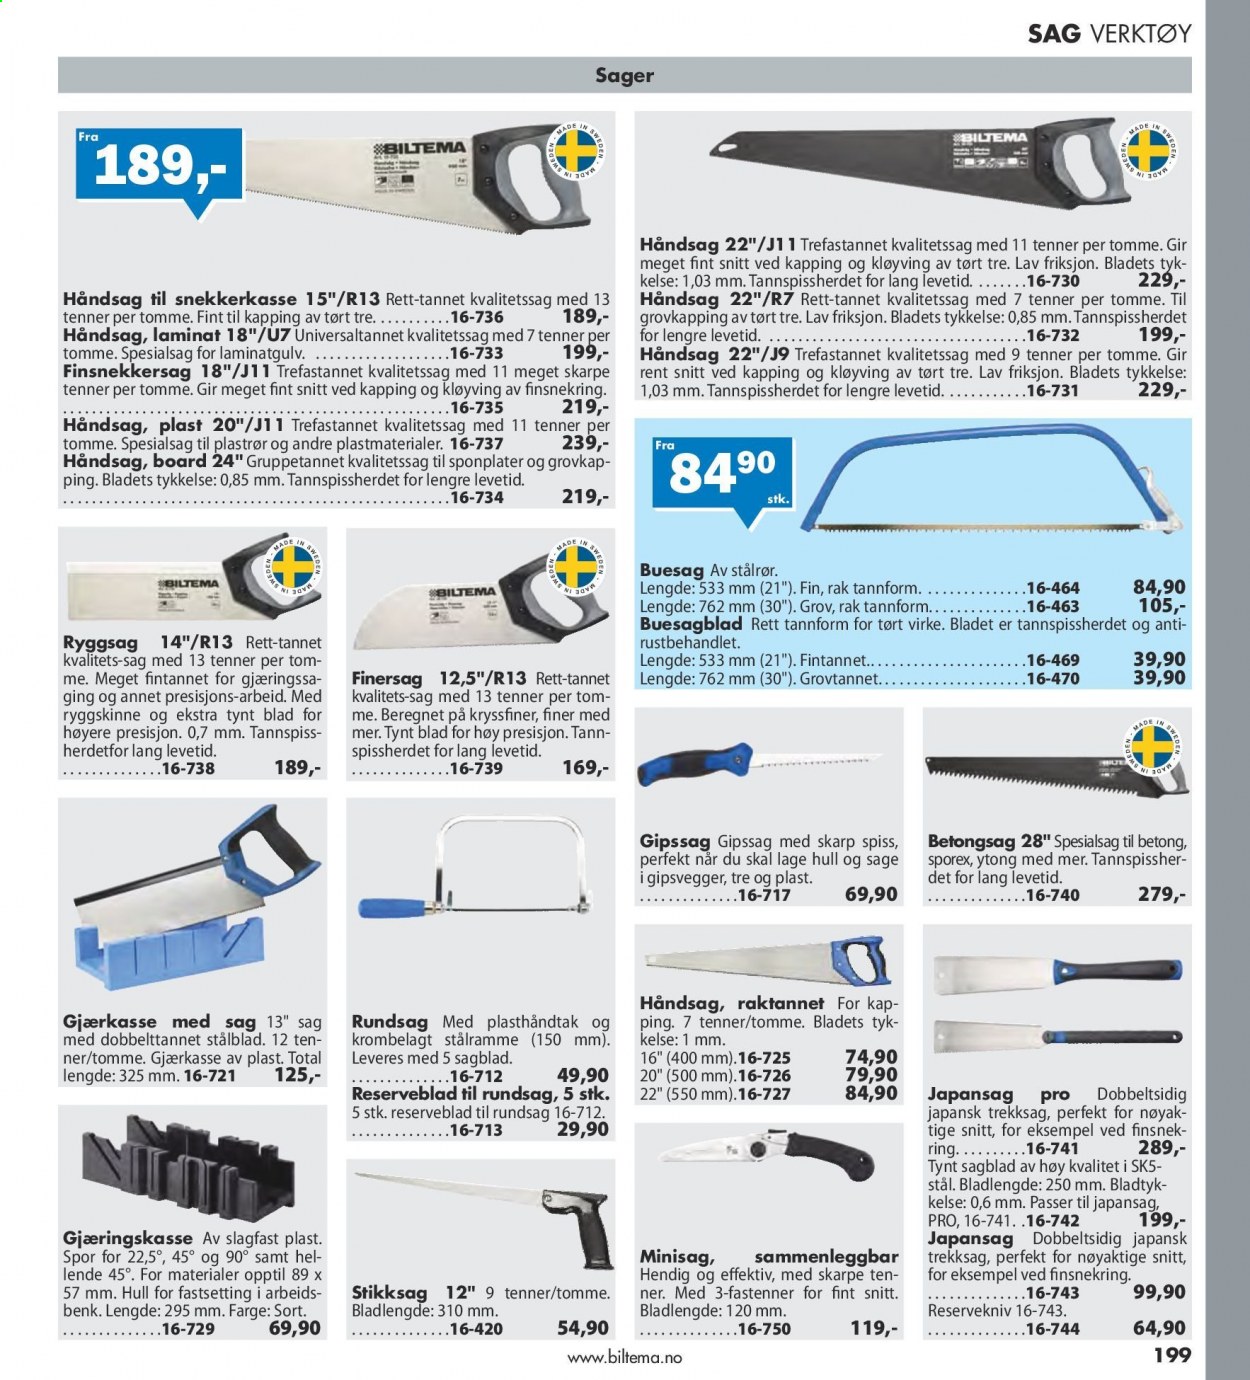 thumbnail - Kundeavis Biltema - Produkter fra tilbudsaviser - benk, laminatgulv, håndsag, verktøy. Side 199.